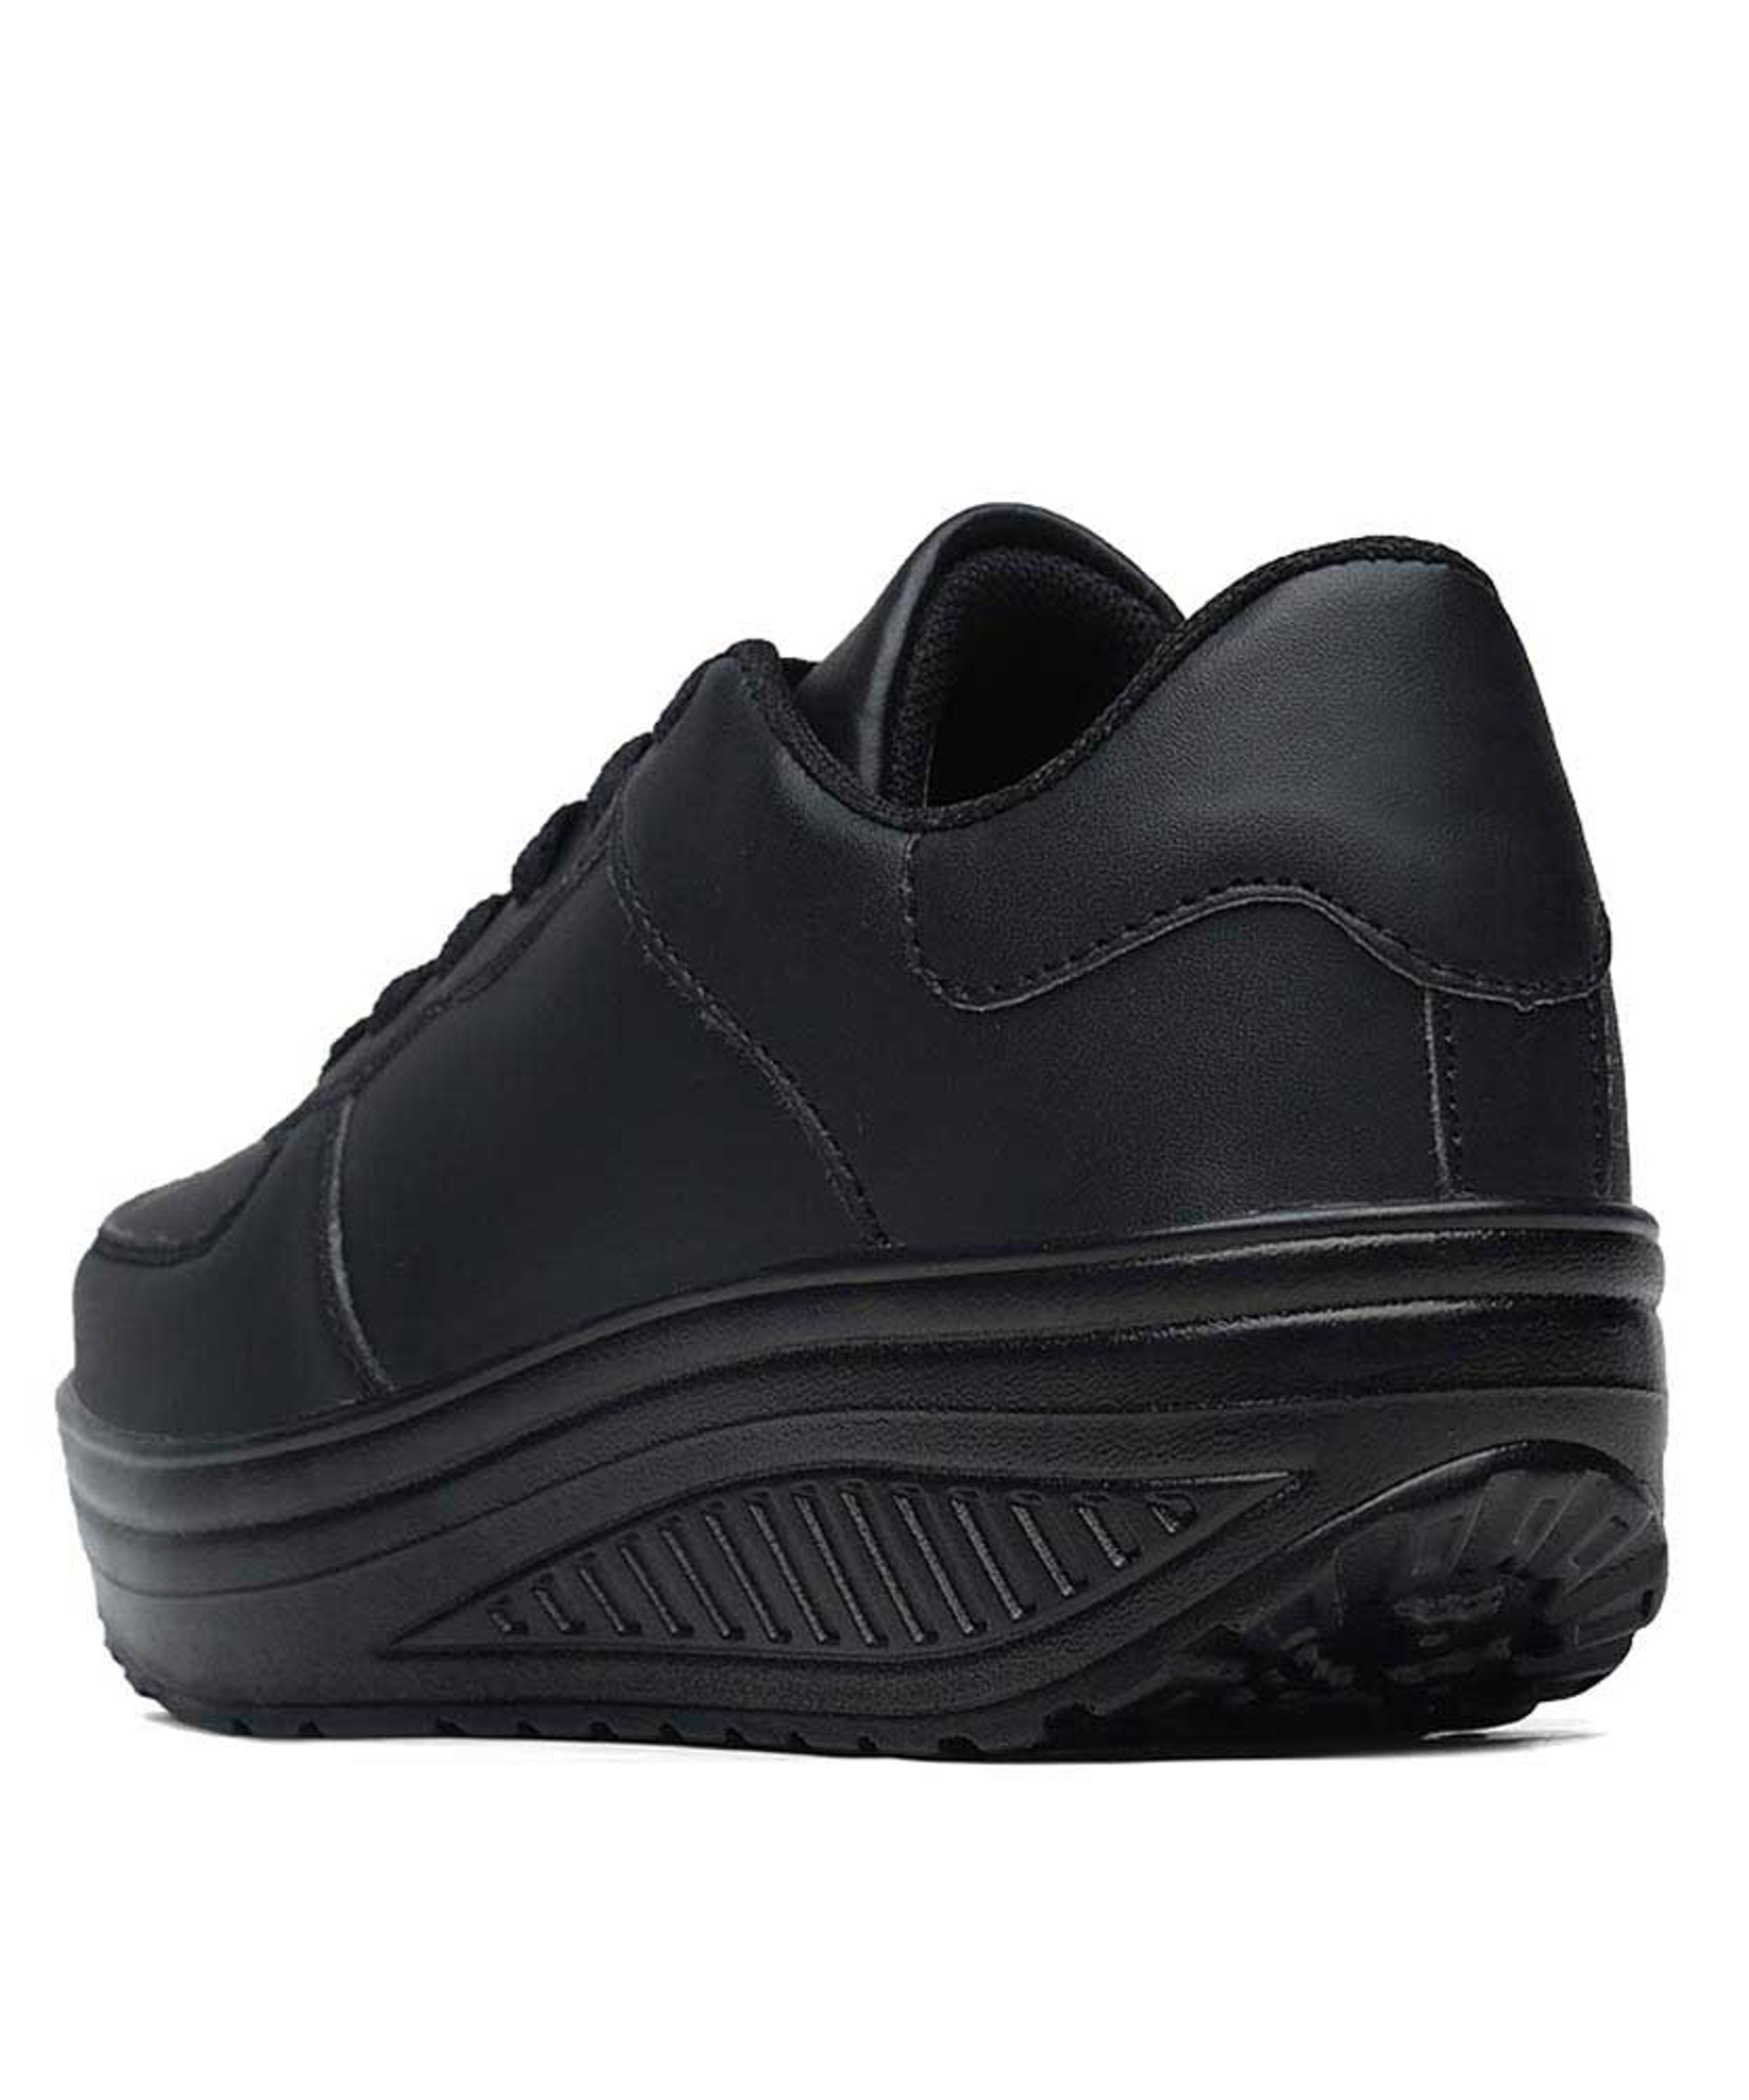 Black lace up rocker bottom shoe sneaker in plain | Womens rocker shoes ...